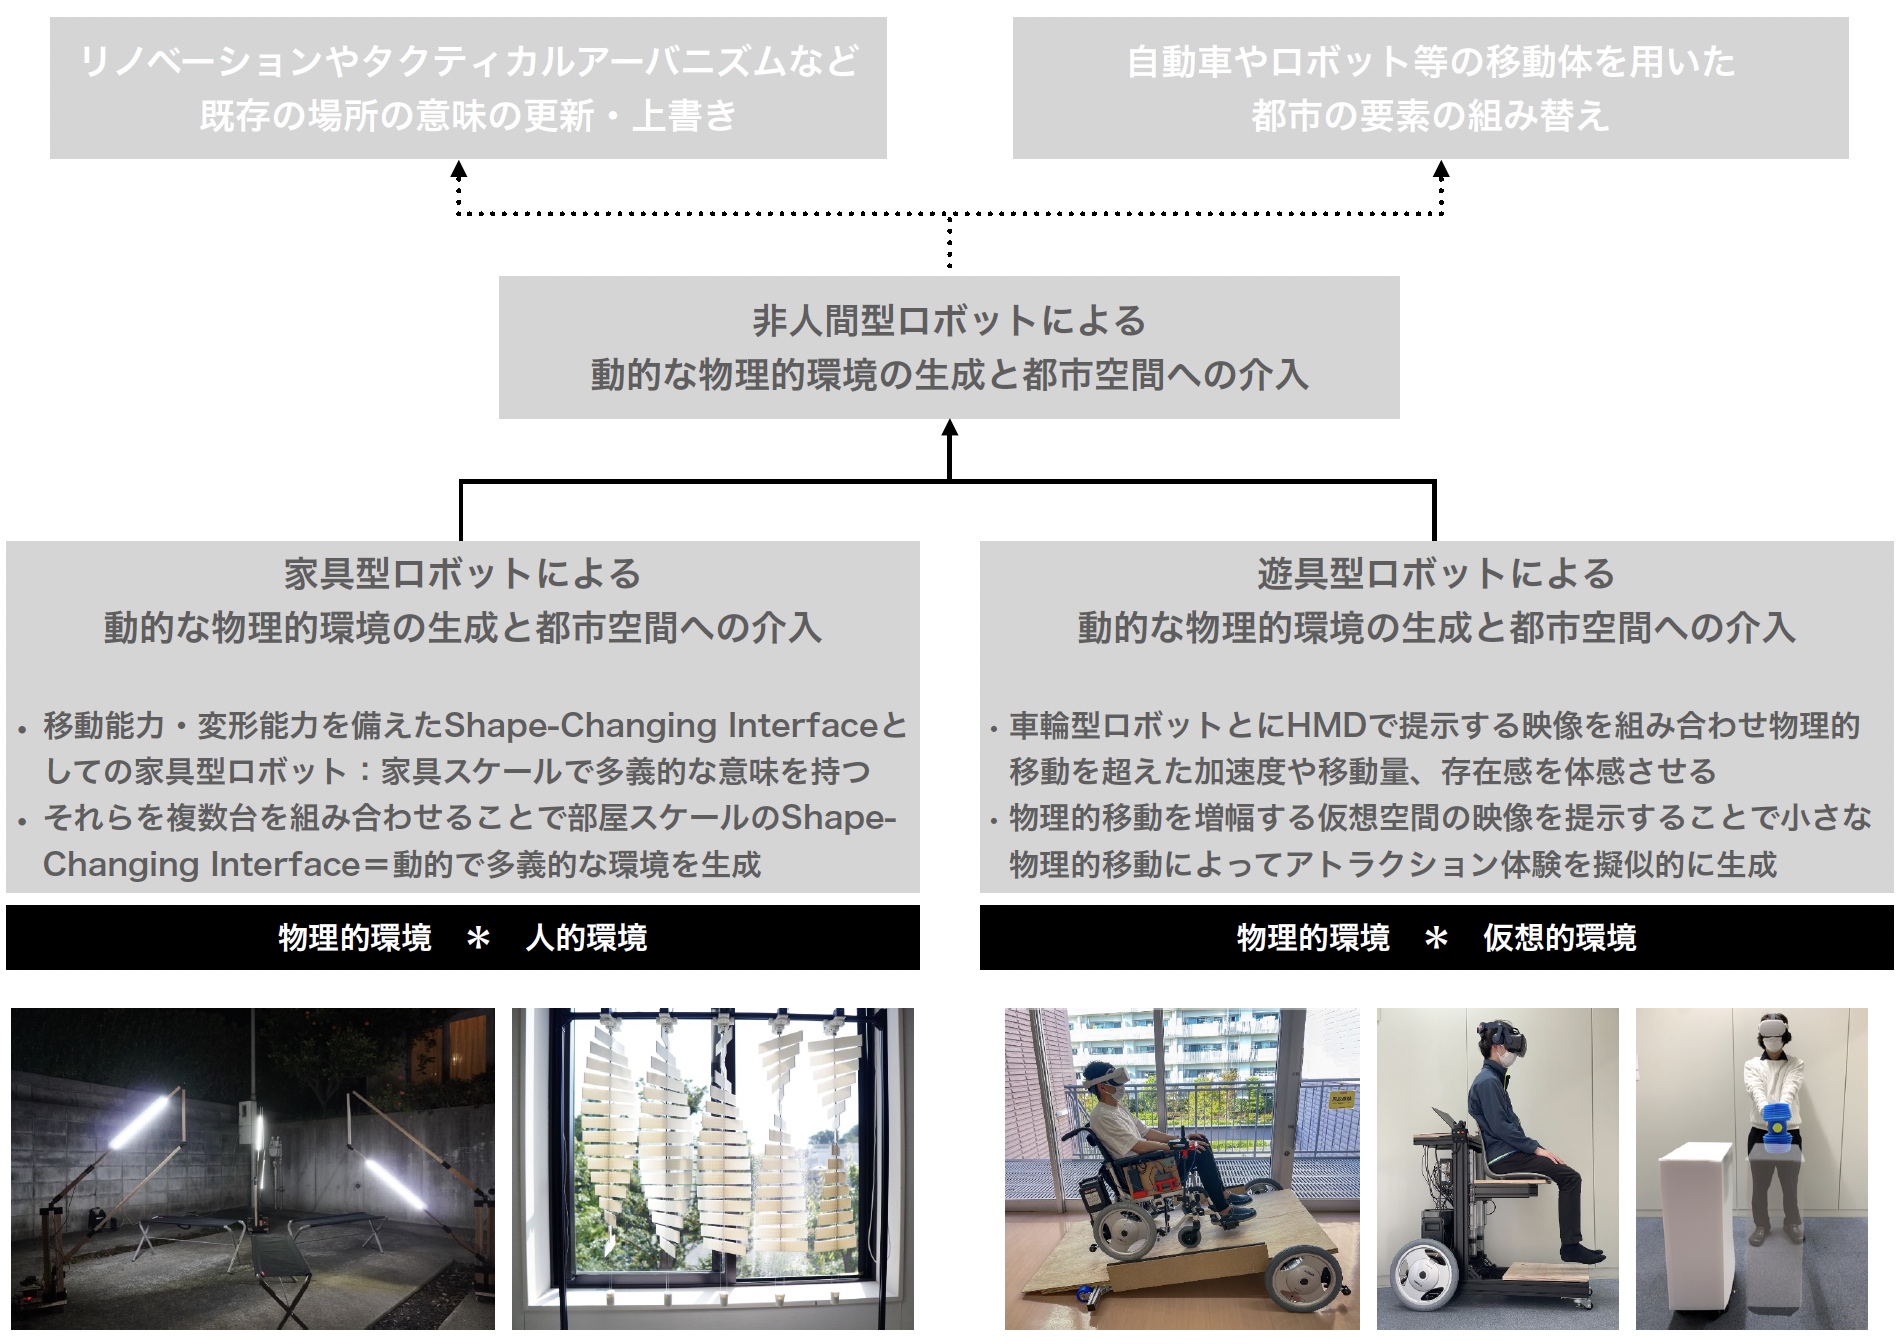 研究課題2：家具型・遊具型ロボットによる介入インタラクション